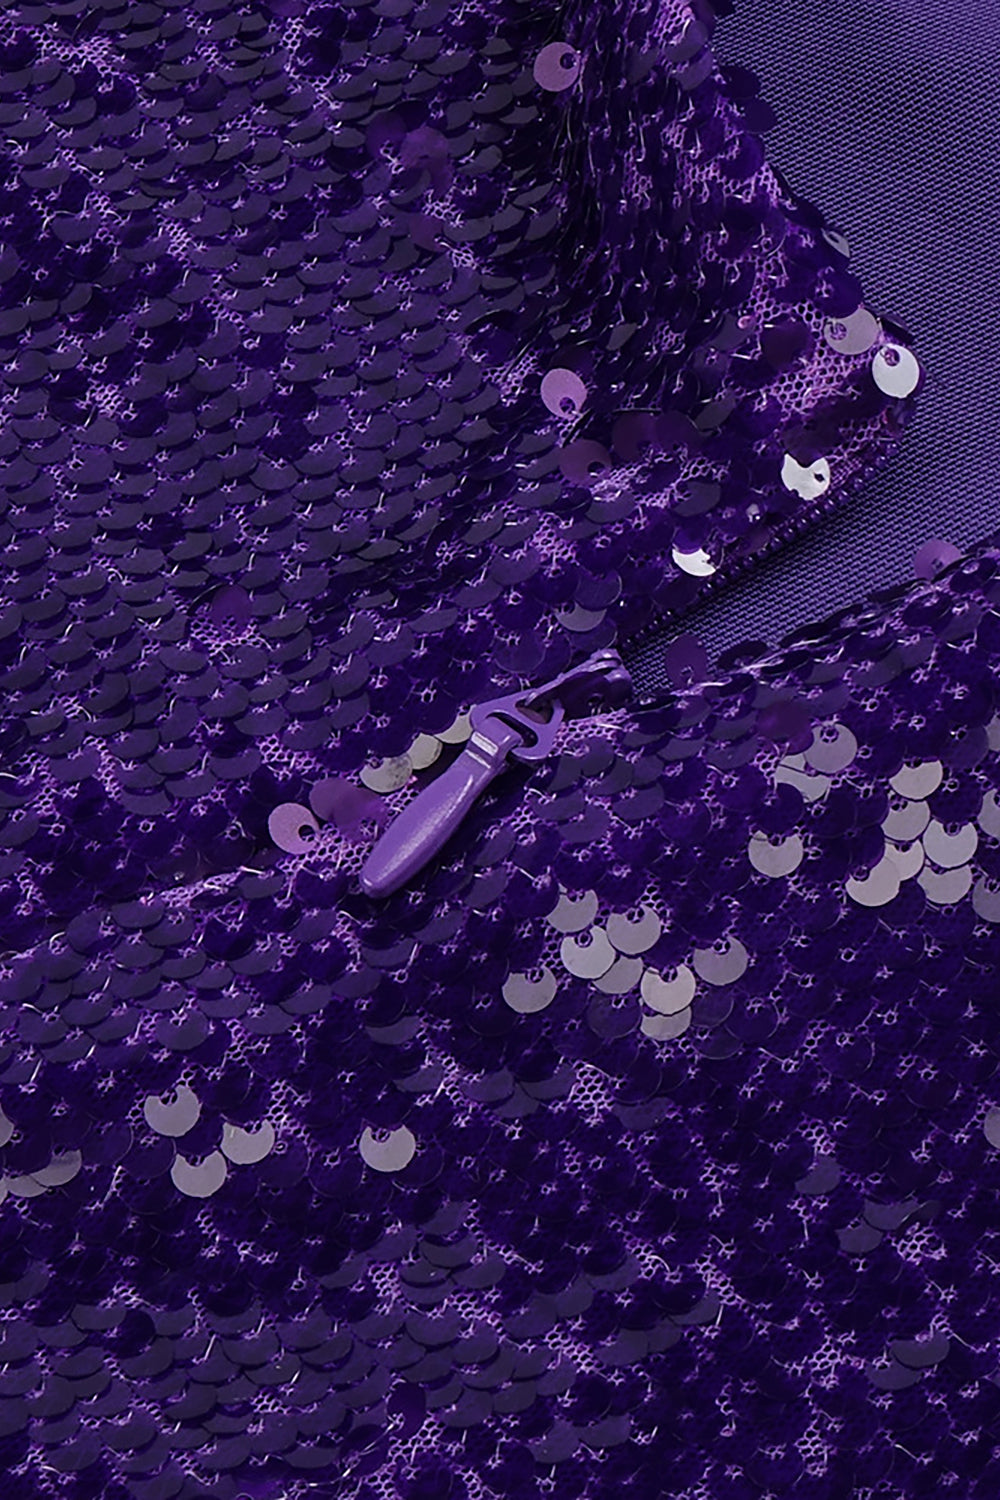 Robe dos nu à sequins sans manches en violet